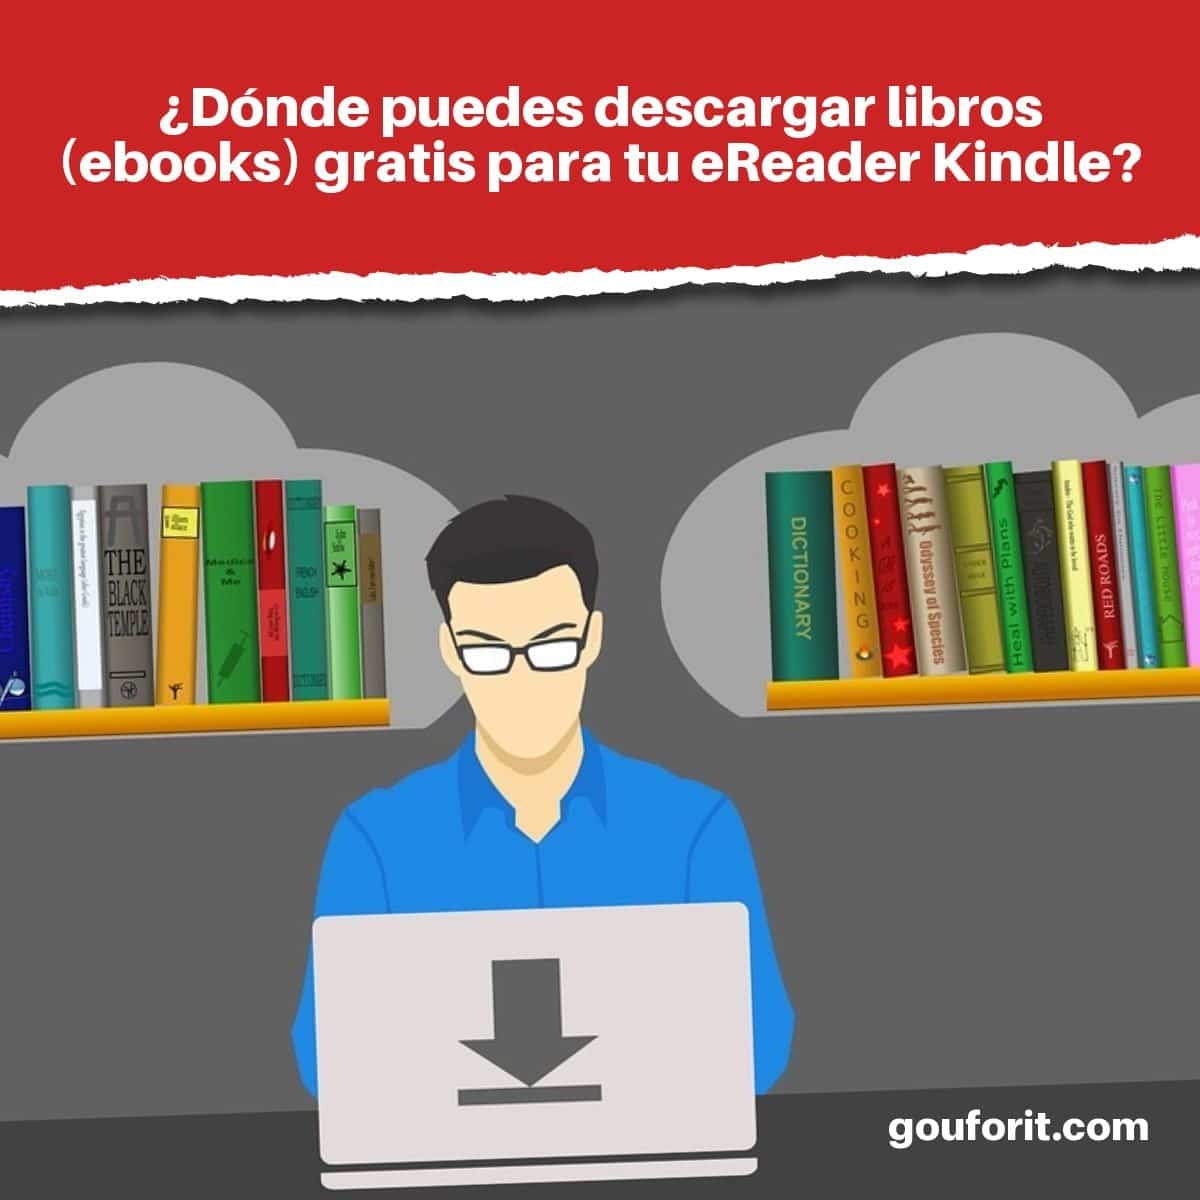 ¿Dónde puedes descargar libros (ebooks) gratis para tu eReader Kindle?